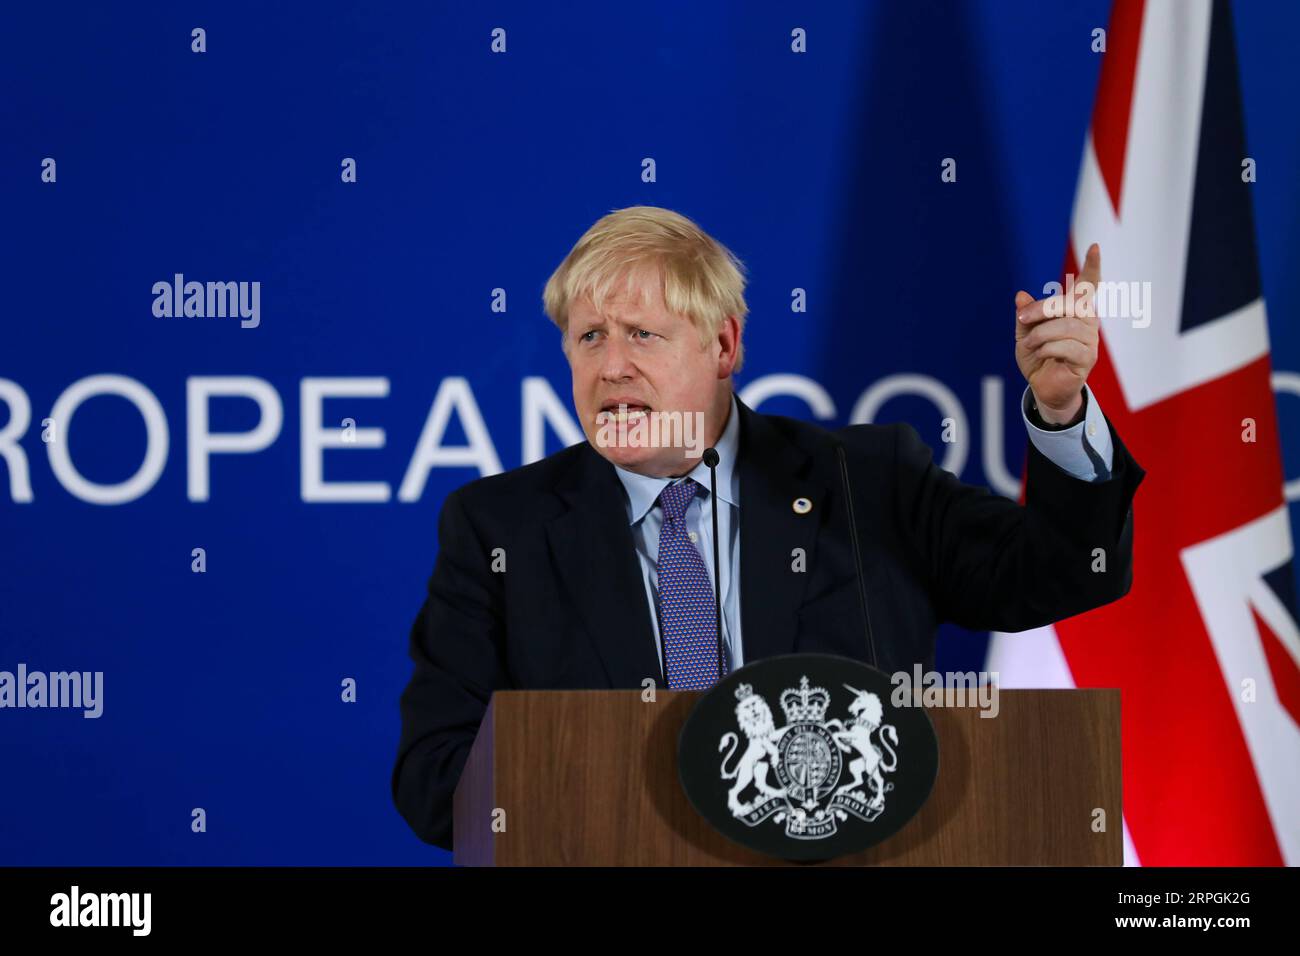 191017 -- BRUXELLES, le 17 octobre 2019 -- le Premier ministre britannique Boris Johnson assiste à une conférence de presse lors d'un sommet de l'UE à Bruxelles, en Belgique, le 17 octobre 2019. Le sommet de deux jours a débuté jeudi. L'Union européenne l'UE et la Grande-Bretagne ont conclu un nouvel accord sur le Brexit, a déclaré jeudi le président de la Commission européenne Jean-Claude Juncker. BELGIQUE-BRUXELLES-UE-SOMMET-NOUVEL ACCORD SUR LE BREXIT ZHANGXCHENG PUBLICATIONXNOTXINXCHN Banque D'Images